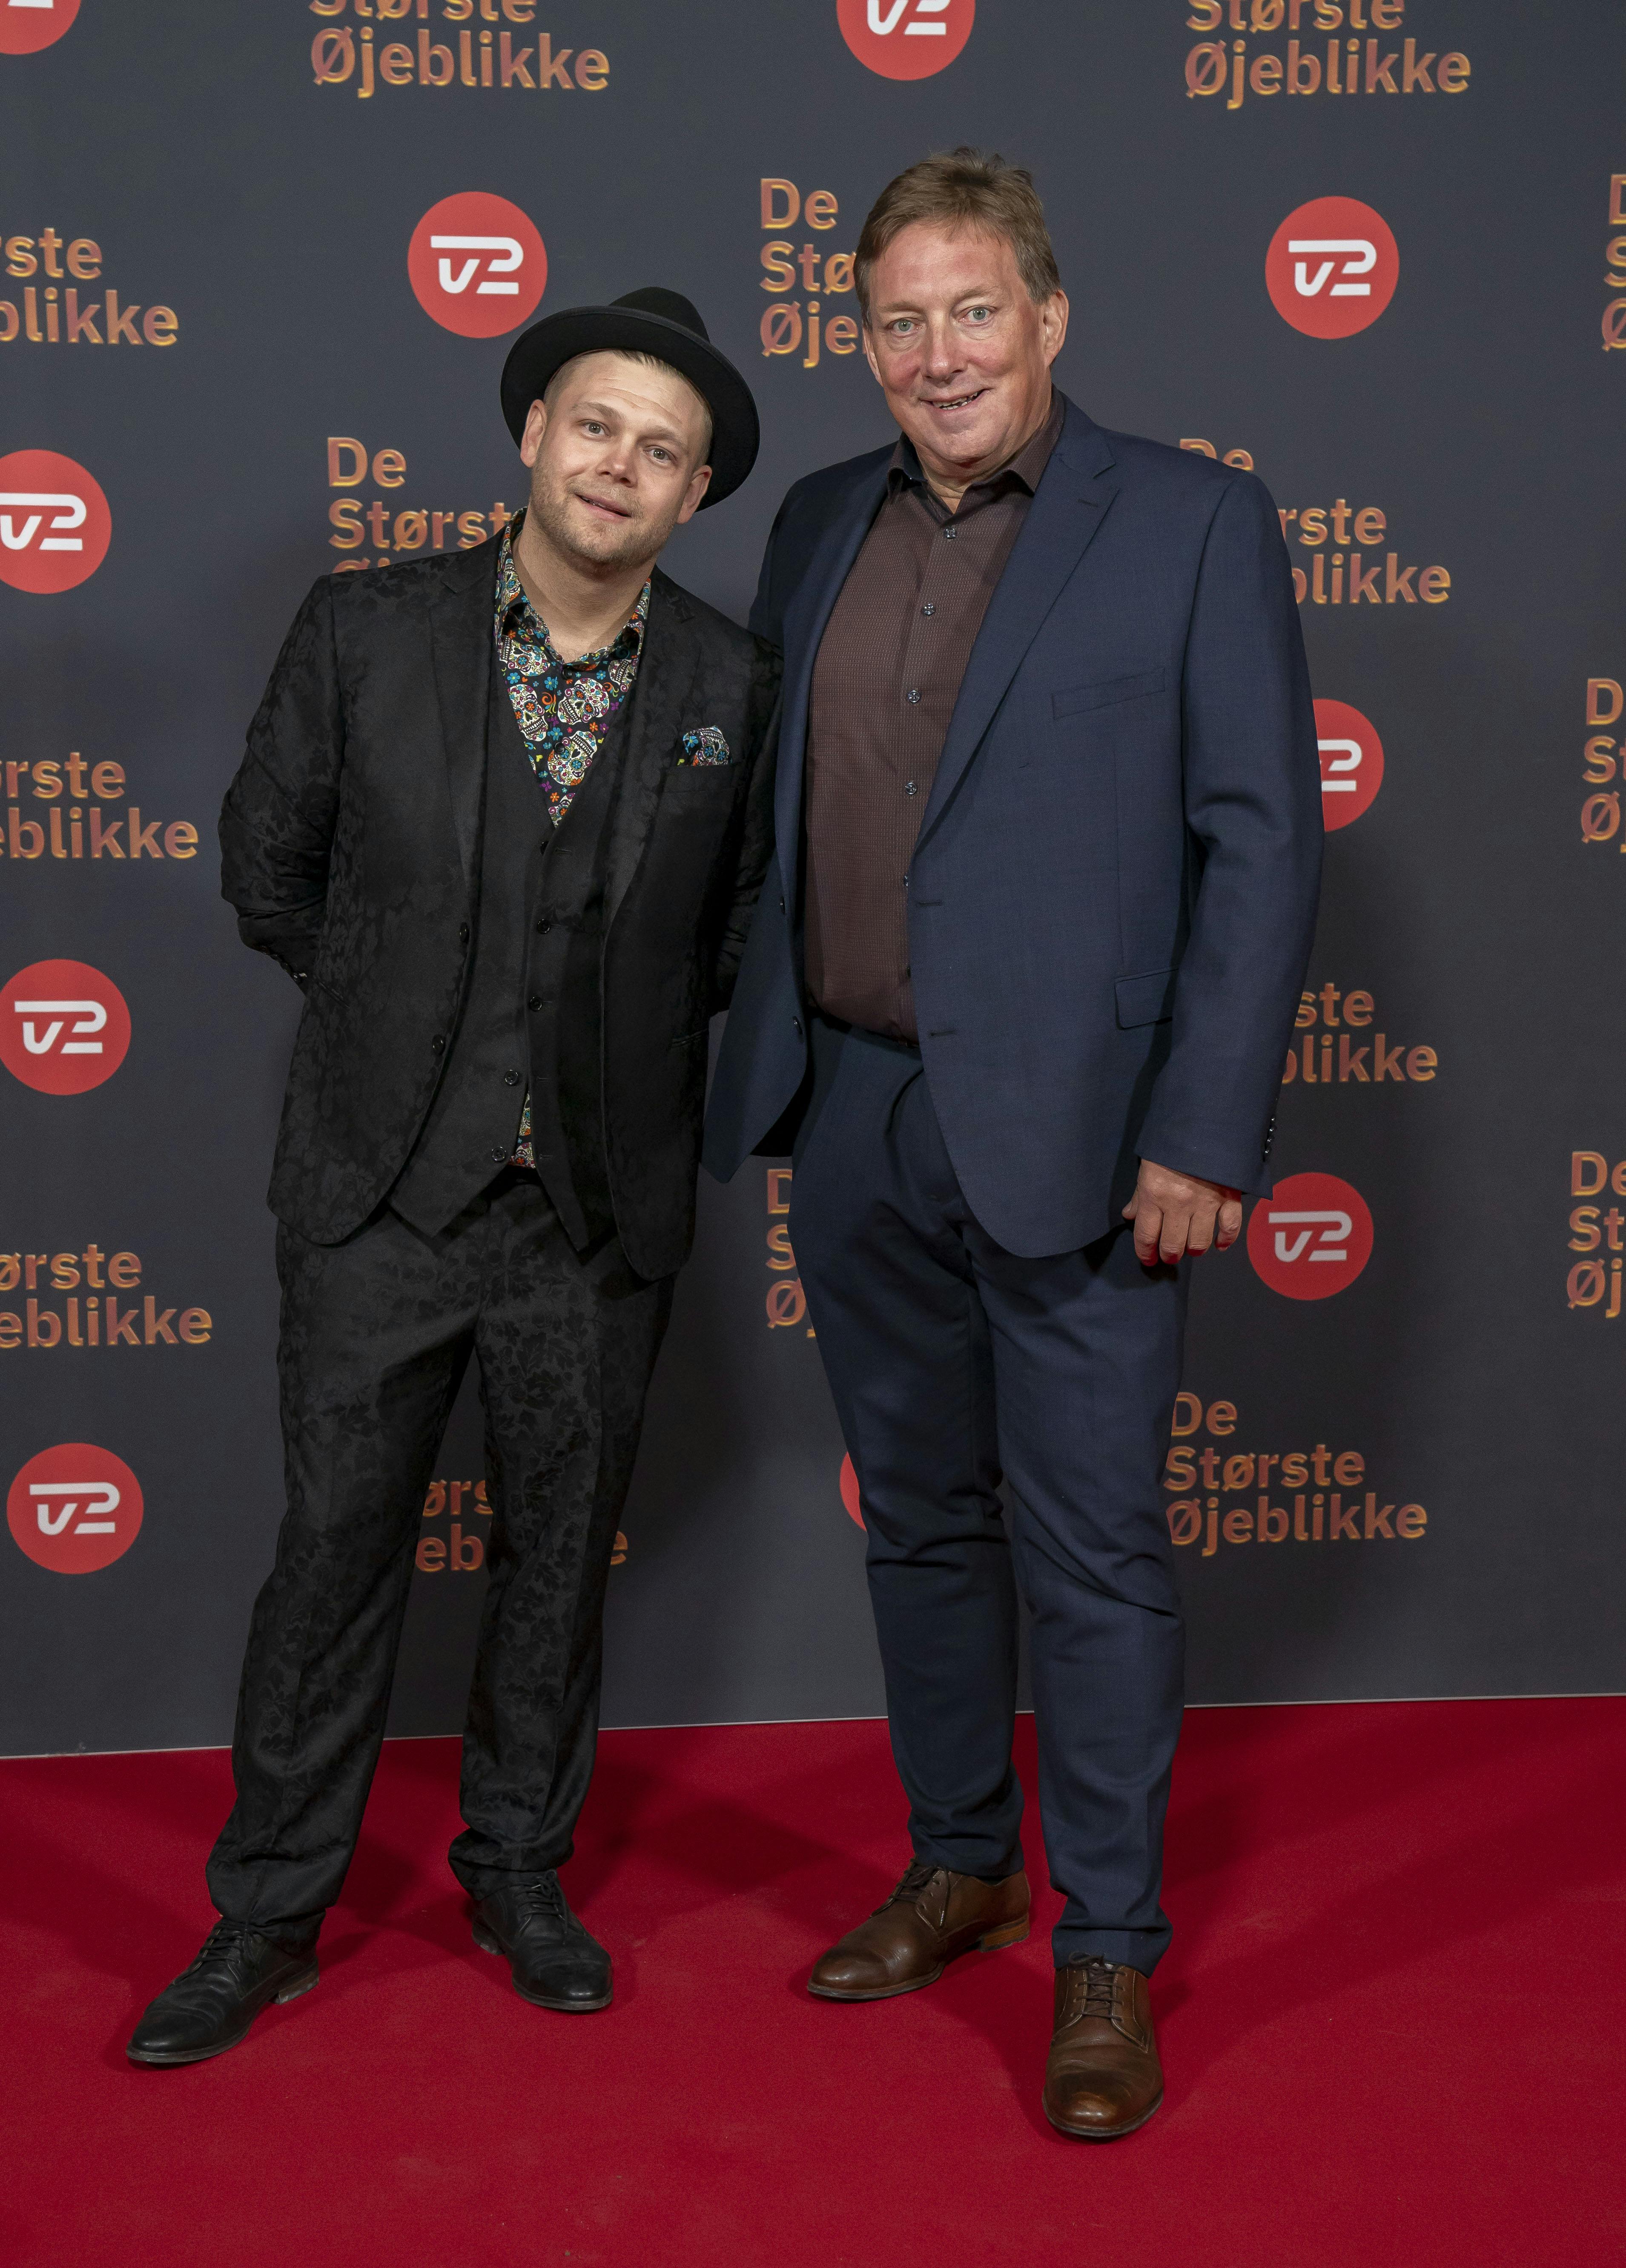 Jesper Panorama medvirkede sammen med Casper Sobczyk i den seneste sæson af "Fem fede kokke".